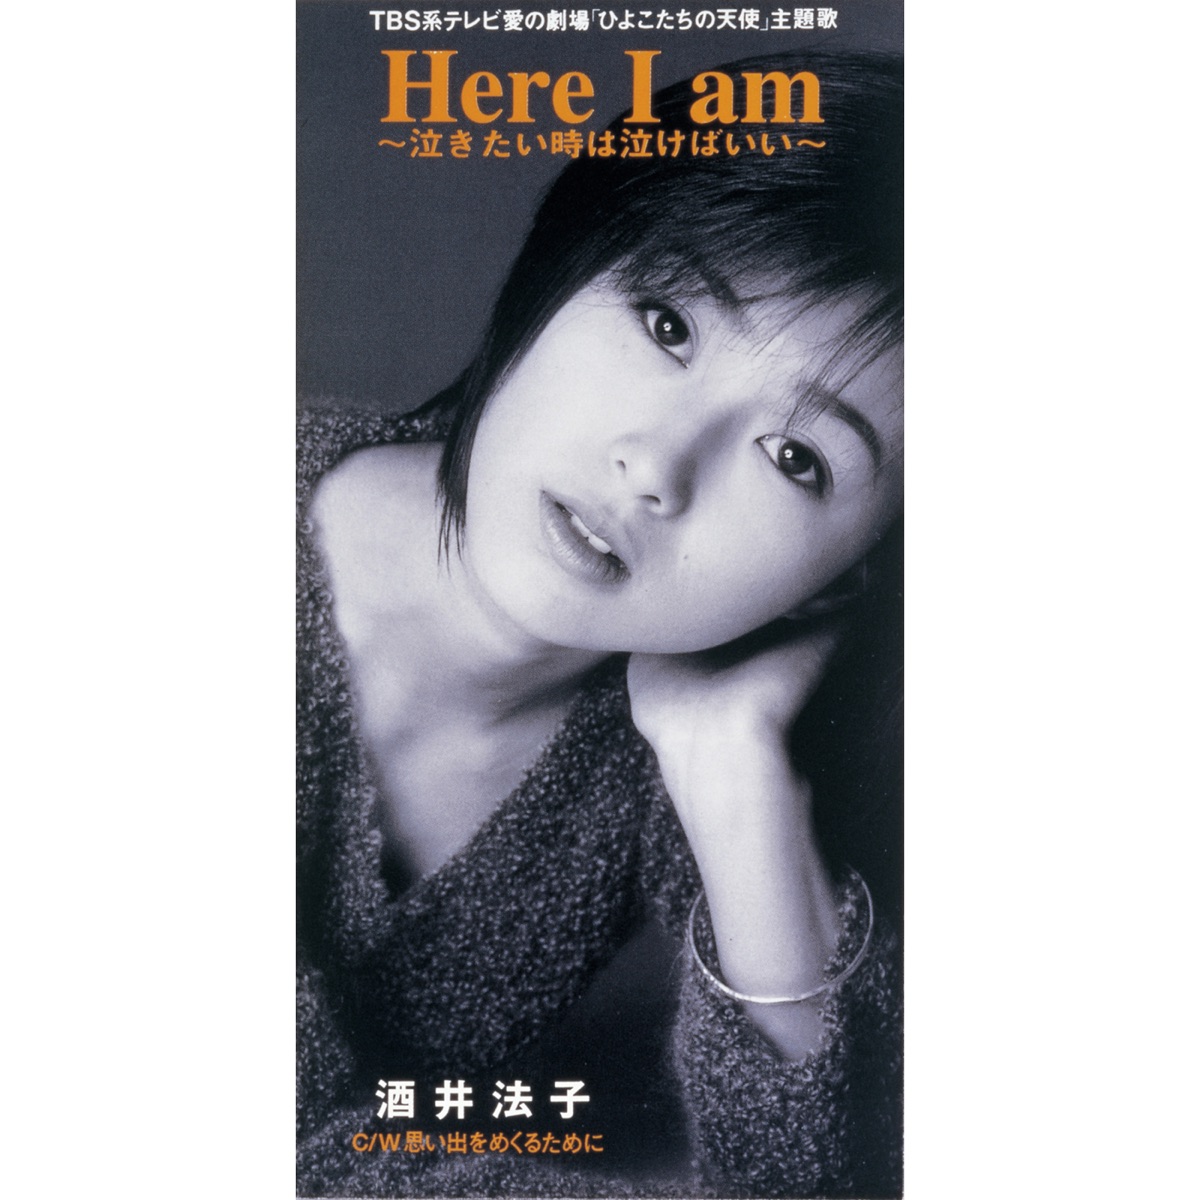 酒井法子 - Here I am ~泣きたい時は泣けばいい~ - EP (1996) [iTunes Plus AAC M4A]-新房子